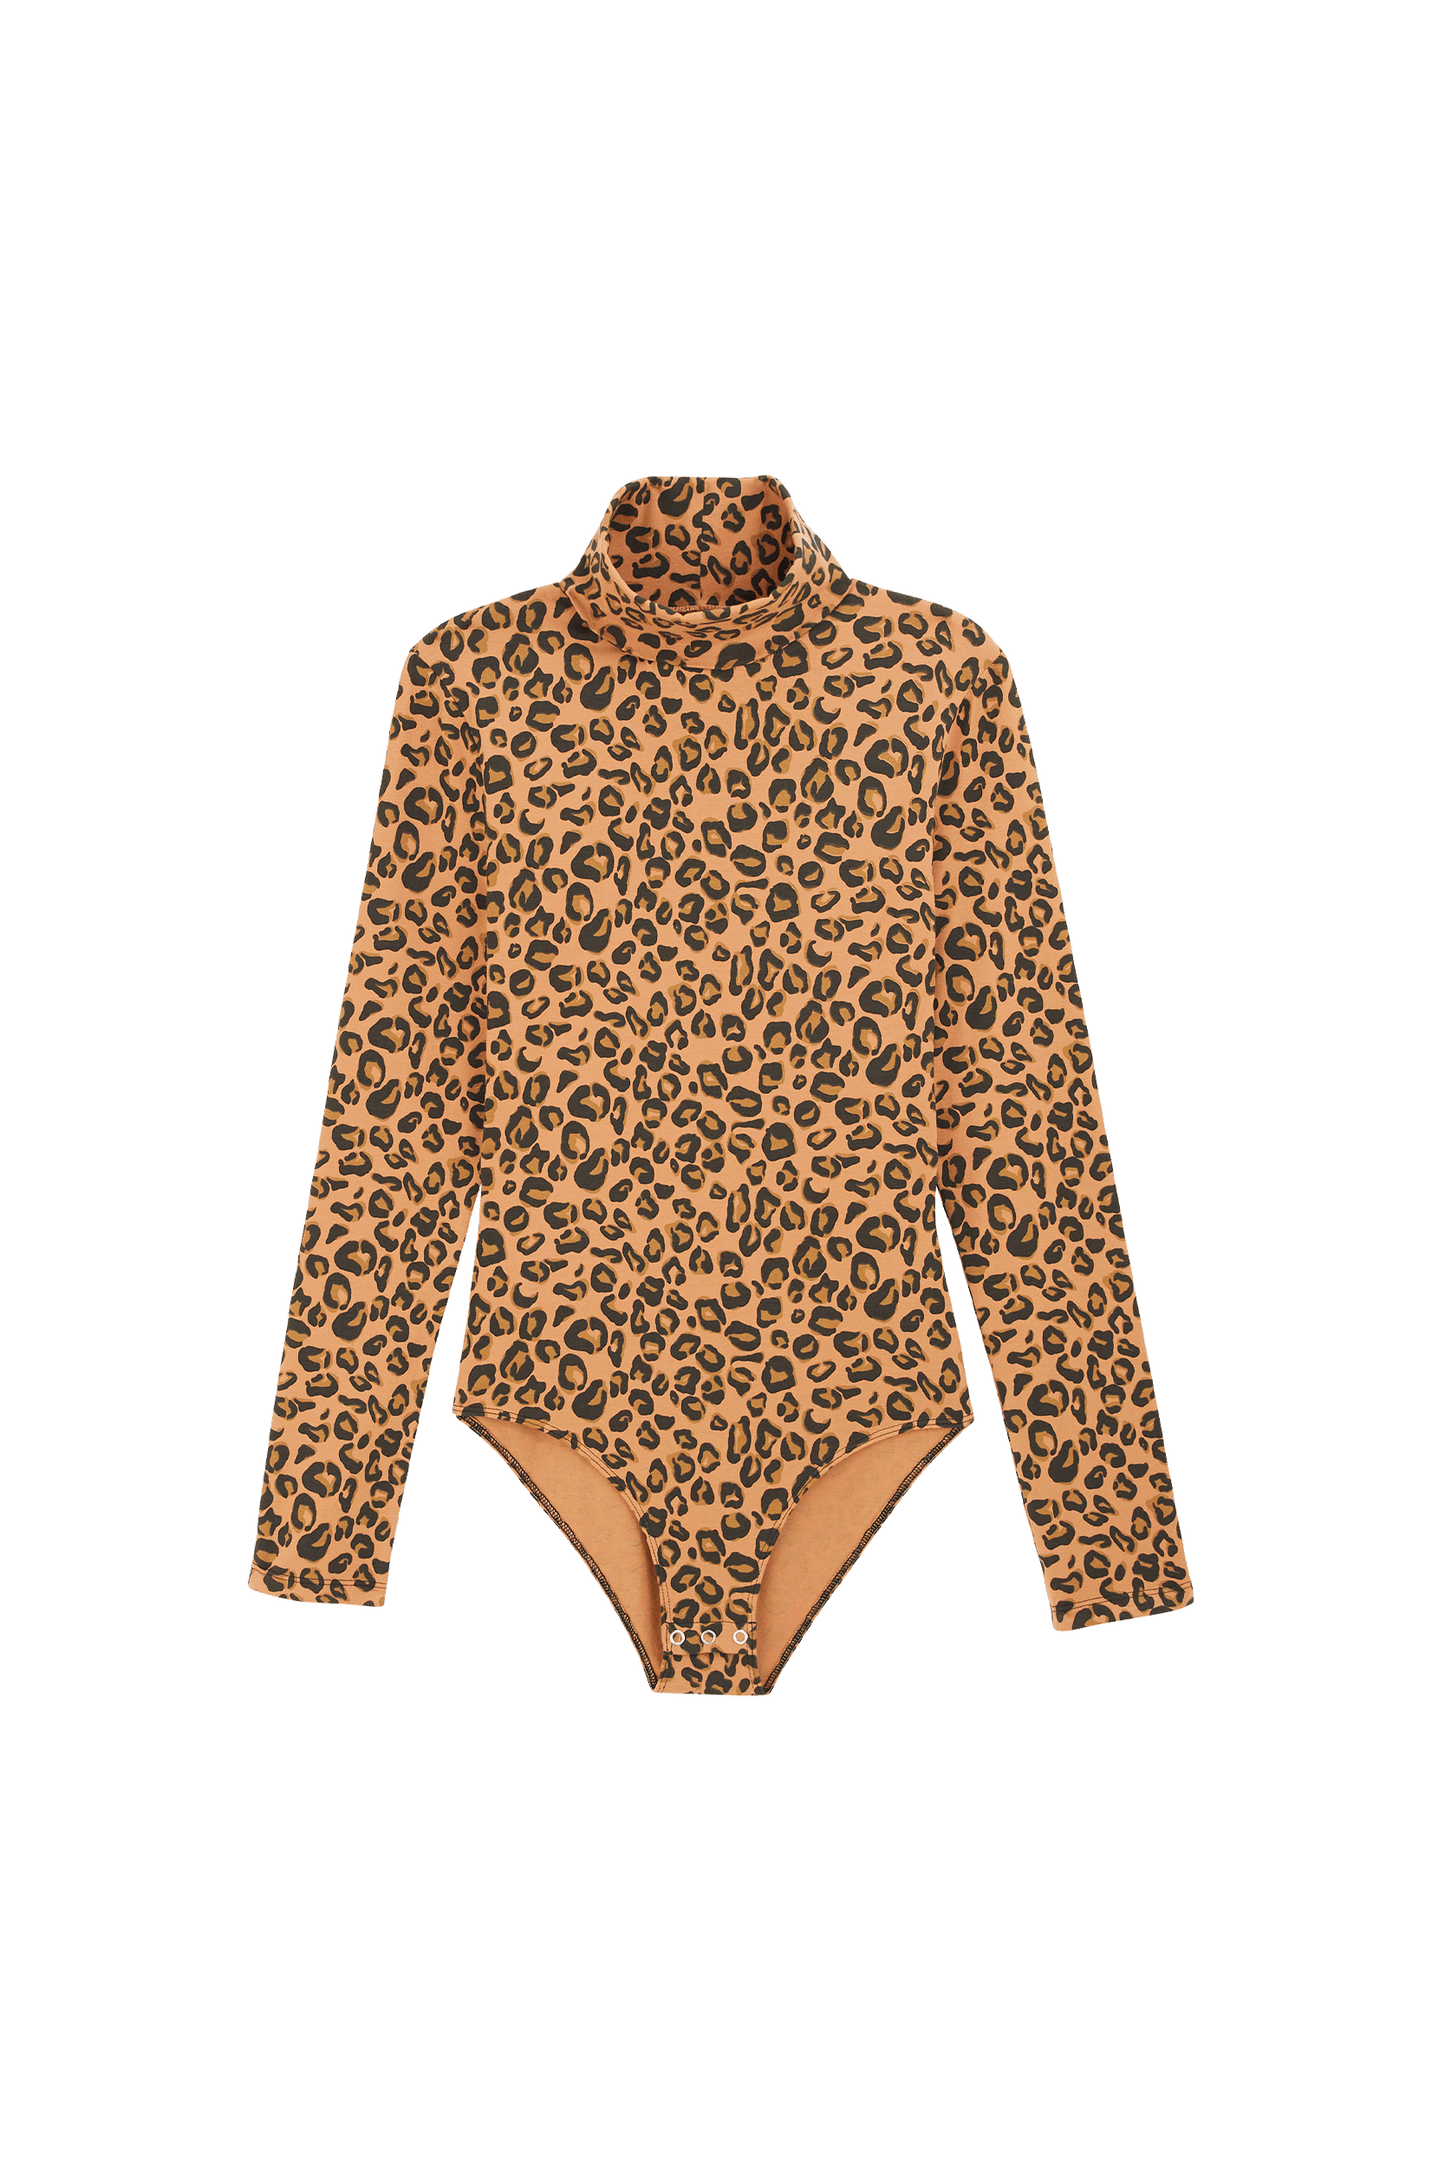 Legendary coffee leopard bodysuit